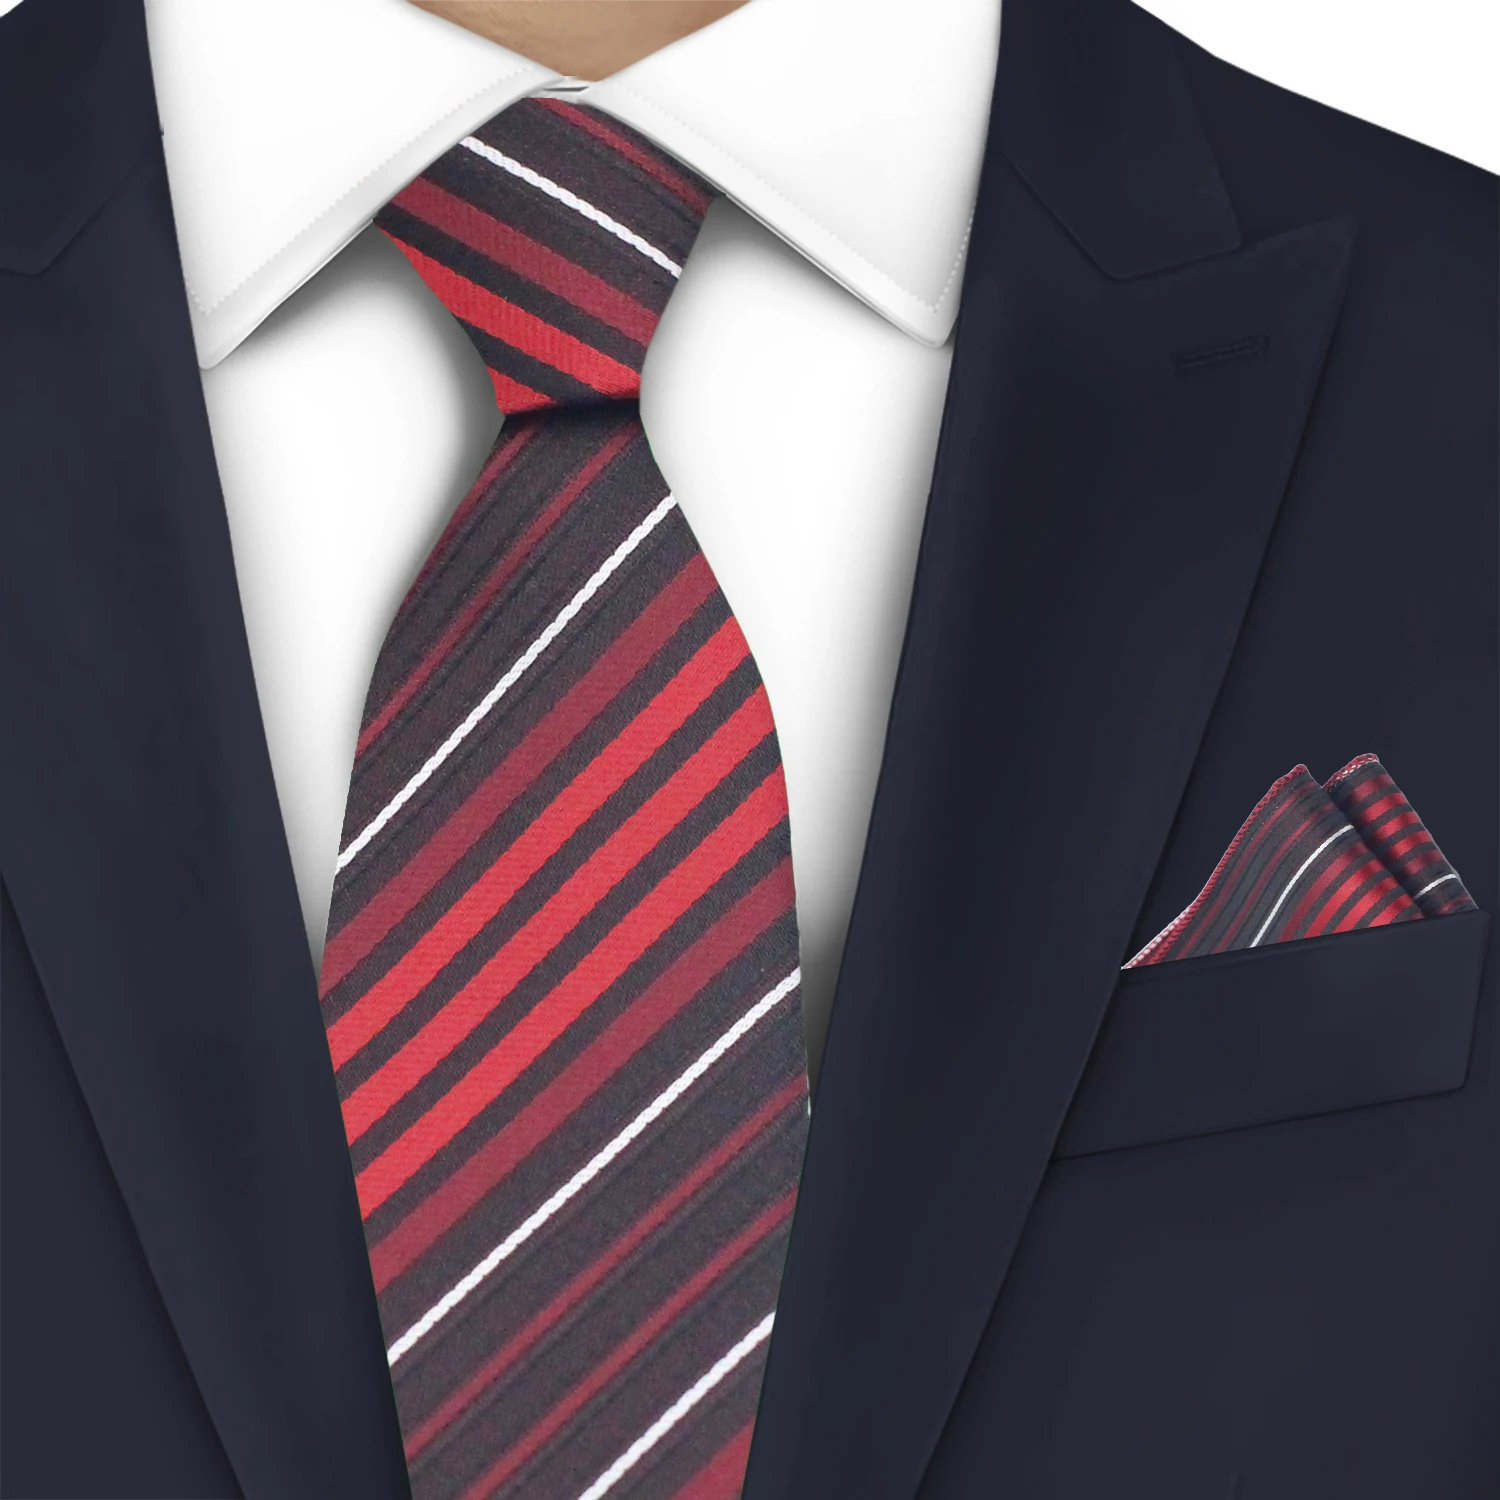 

LYL 5CM Fashion Red Twill Men's Tie Suit Wedding Gifts Accessories Necktie Slim Tie Pocket Square Set Gentleman Free Shipping